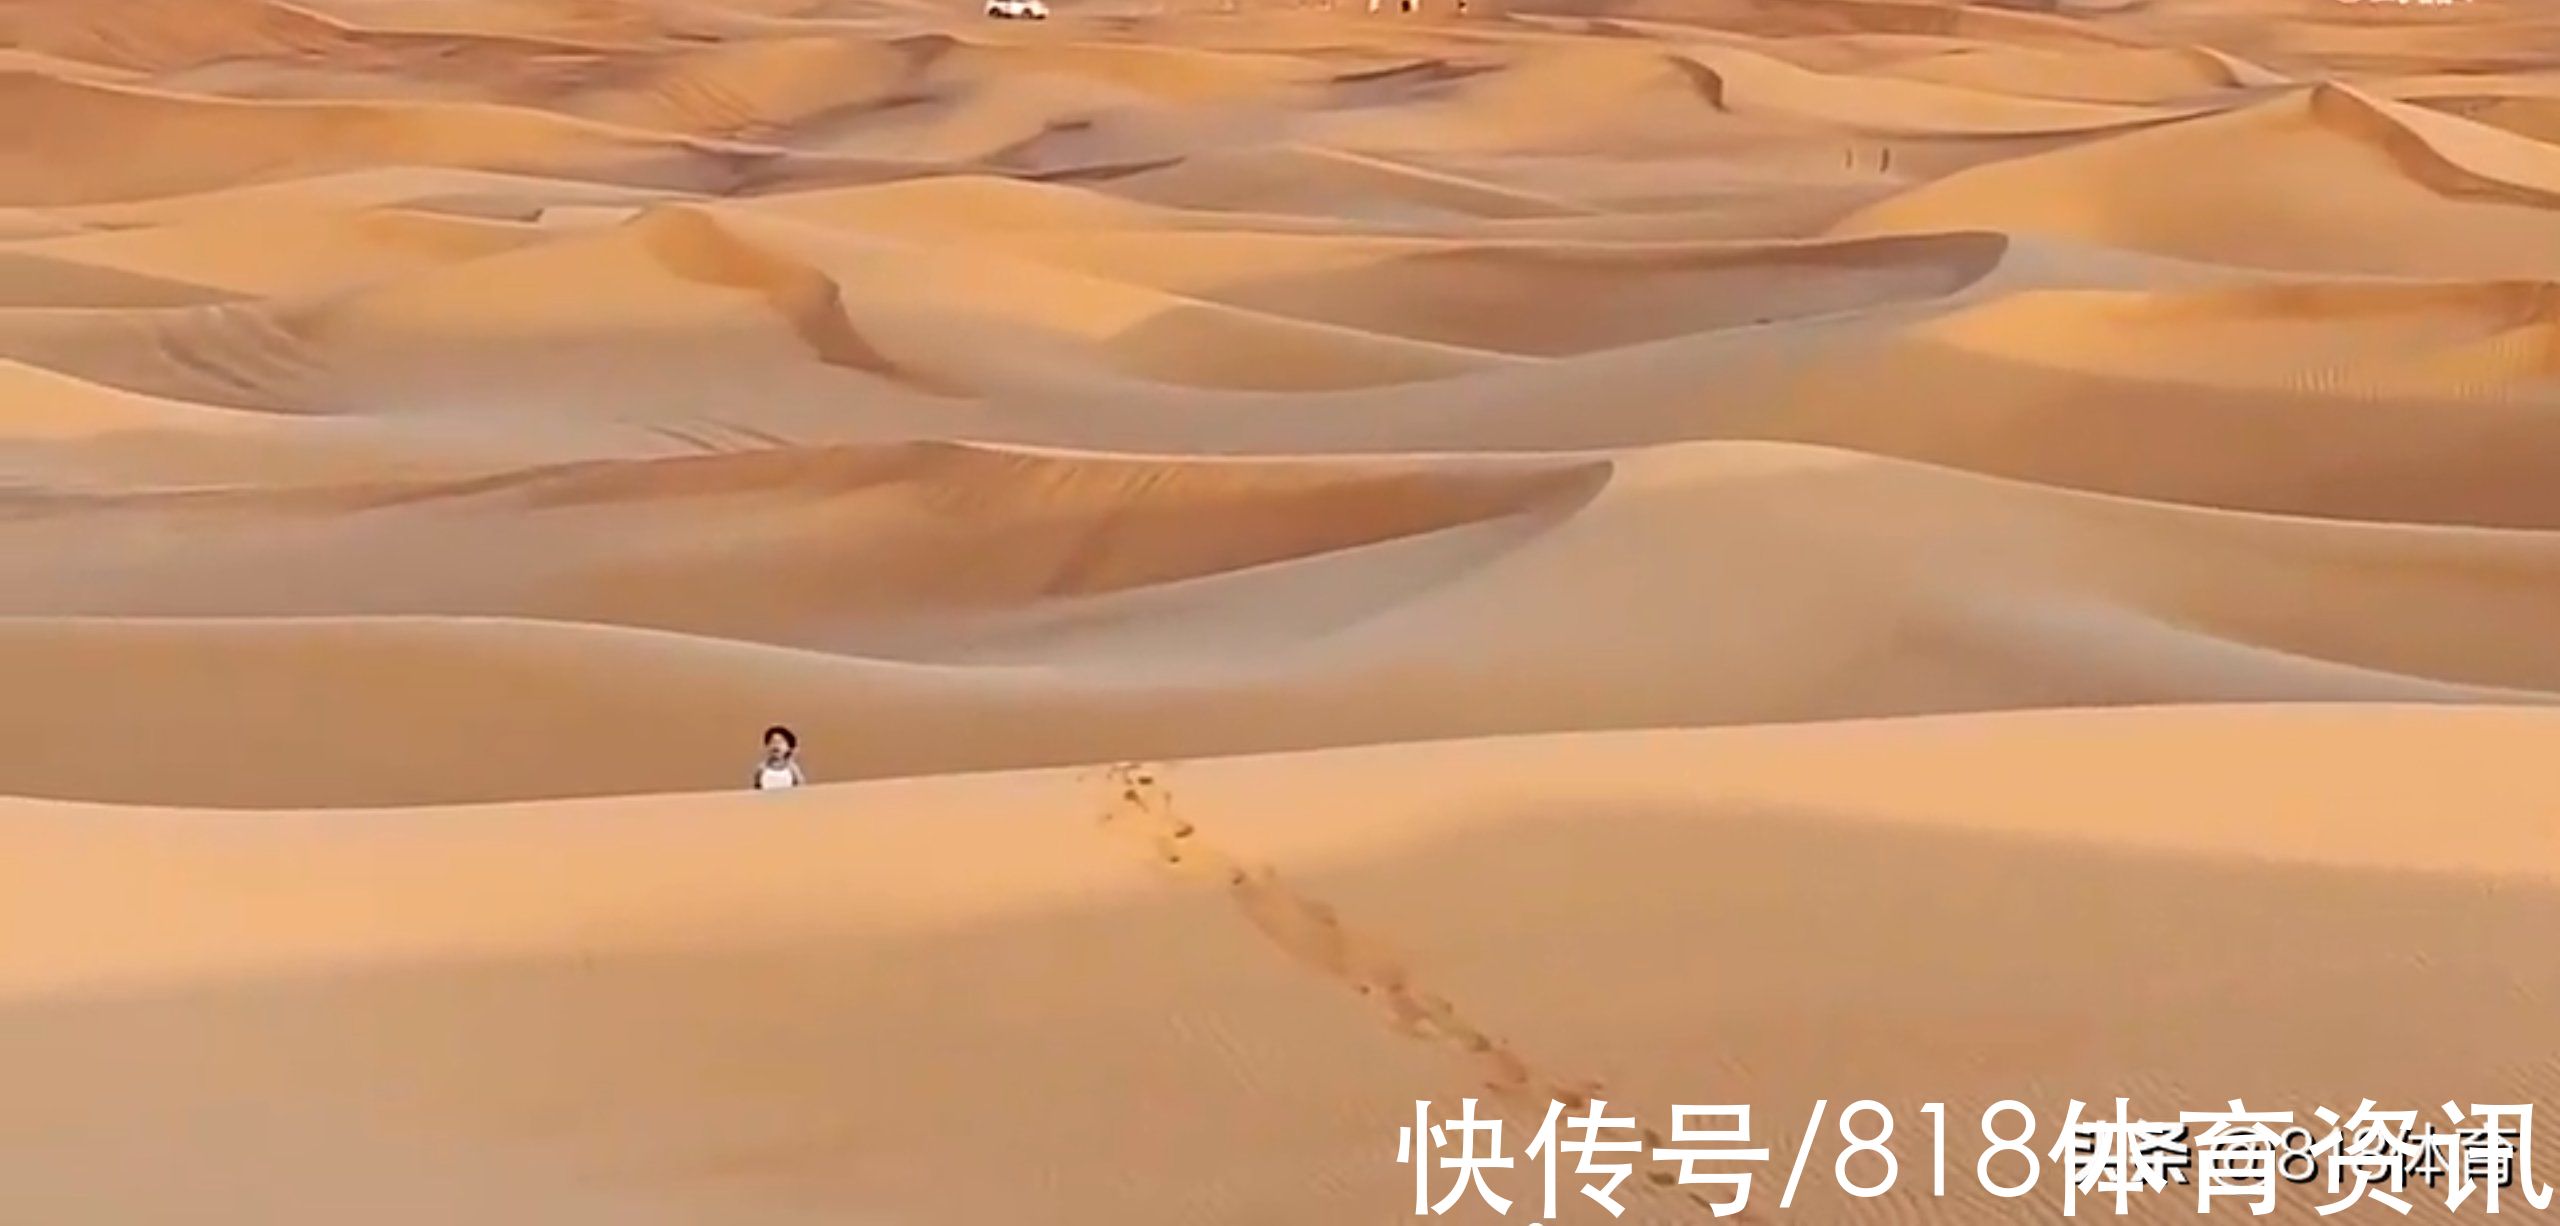 阿联酋|享受人生!武磊携漂亮妻子阿联酋度假,一双儿女头回见沙漠满地疯玩